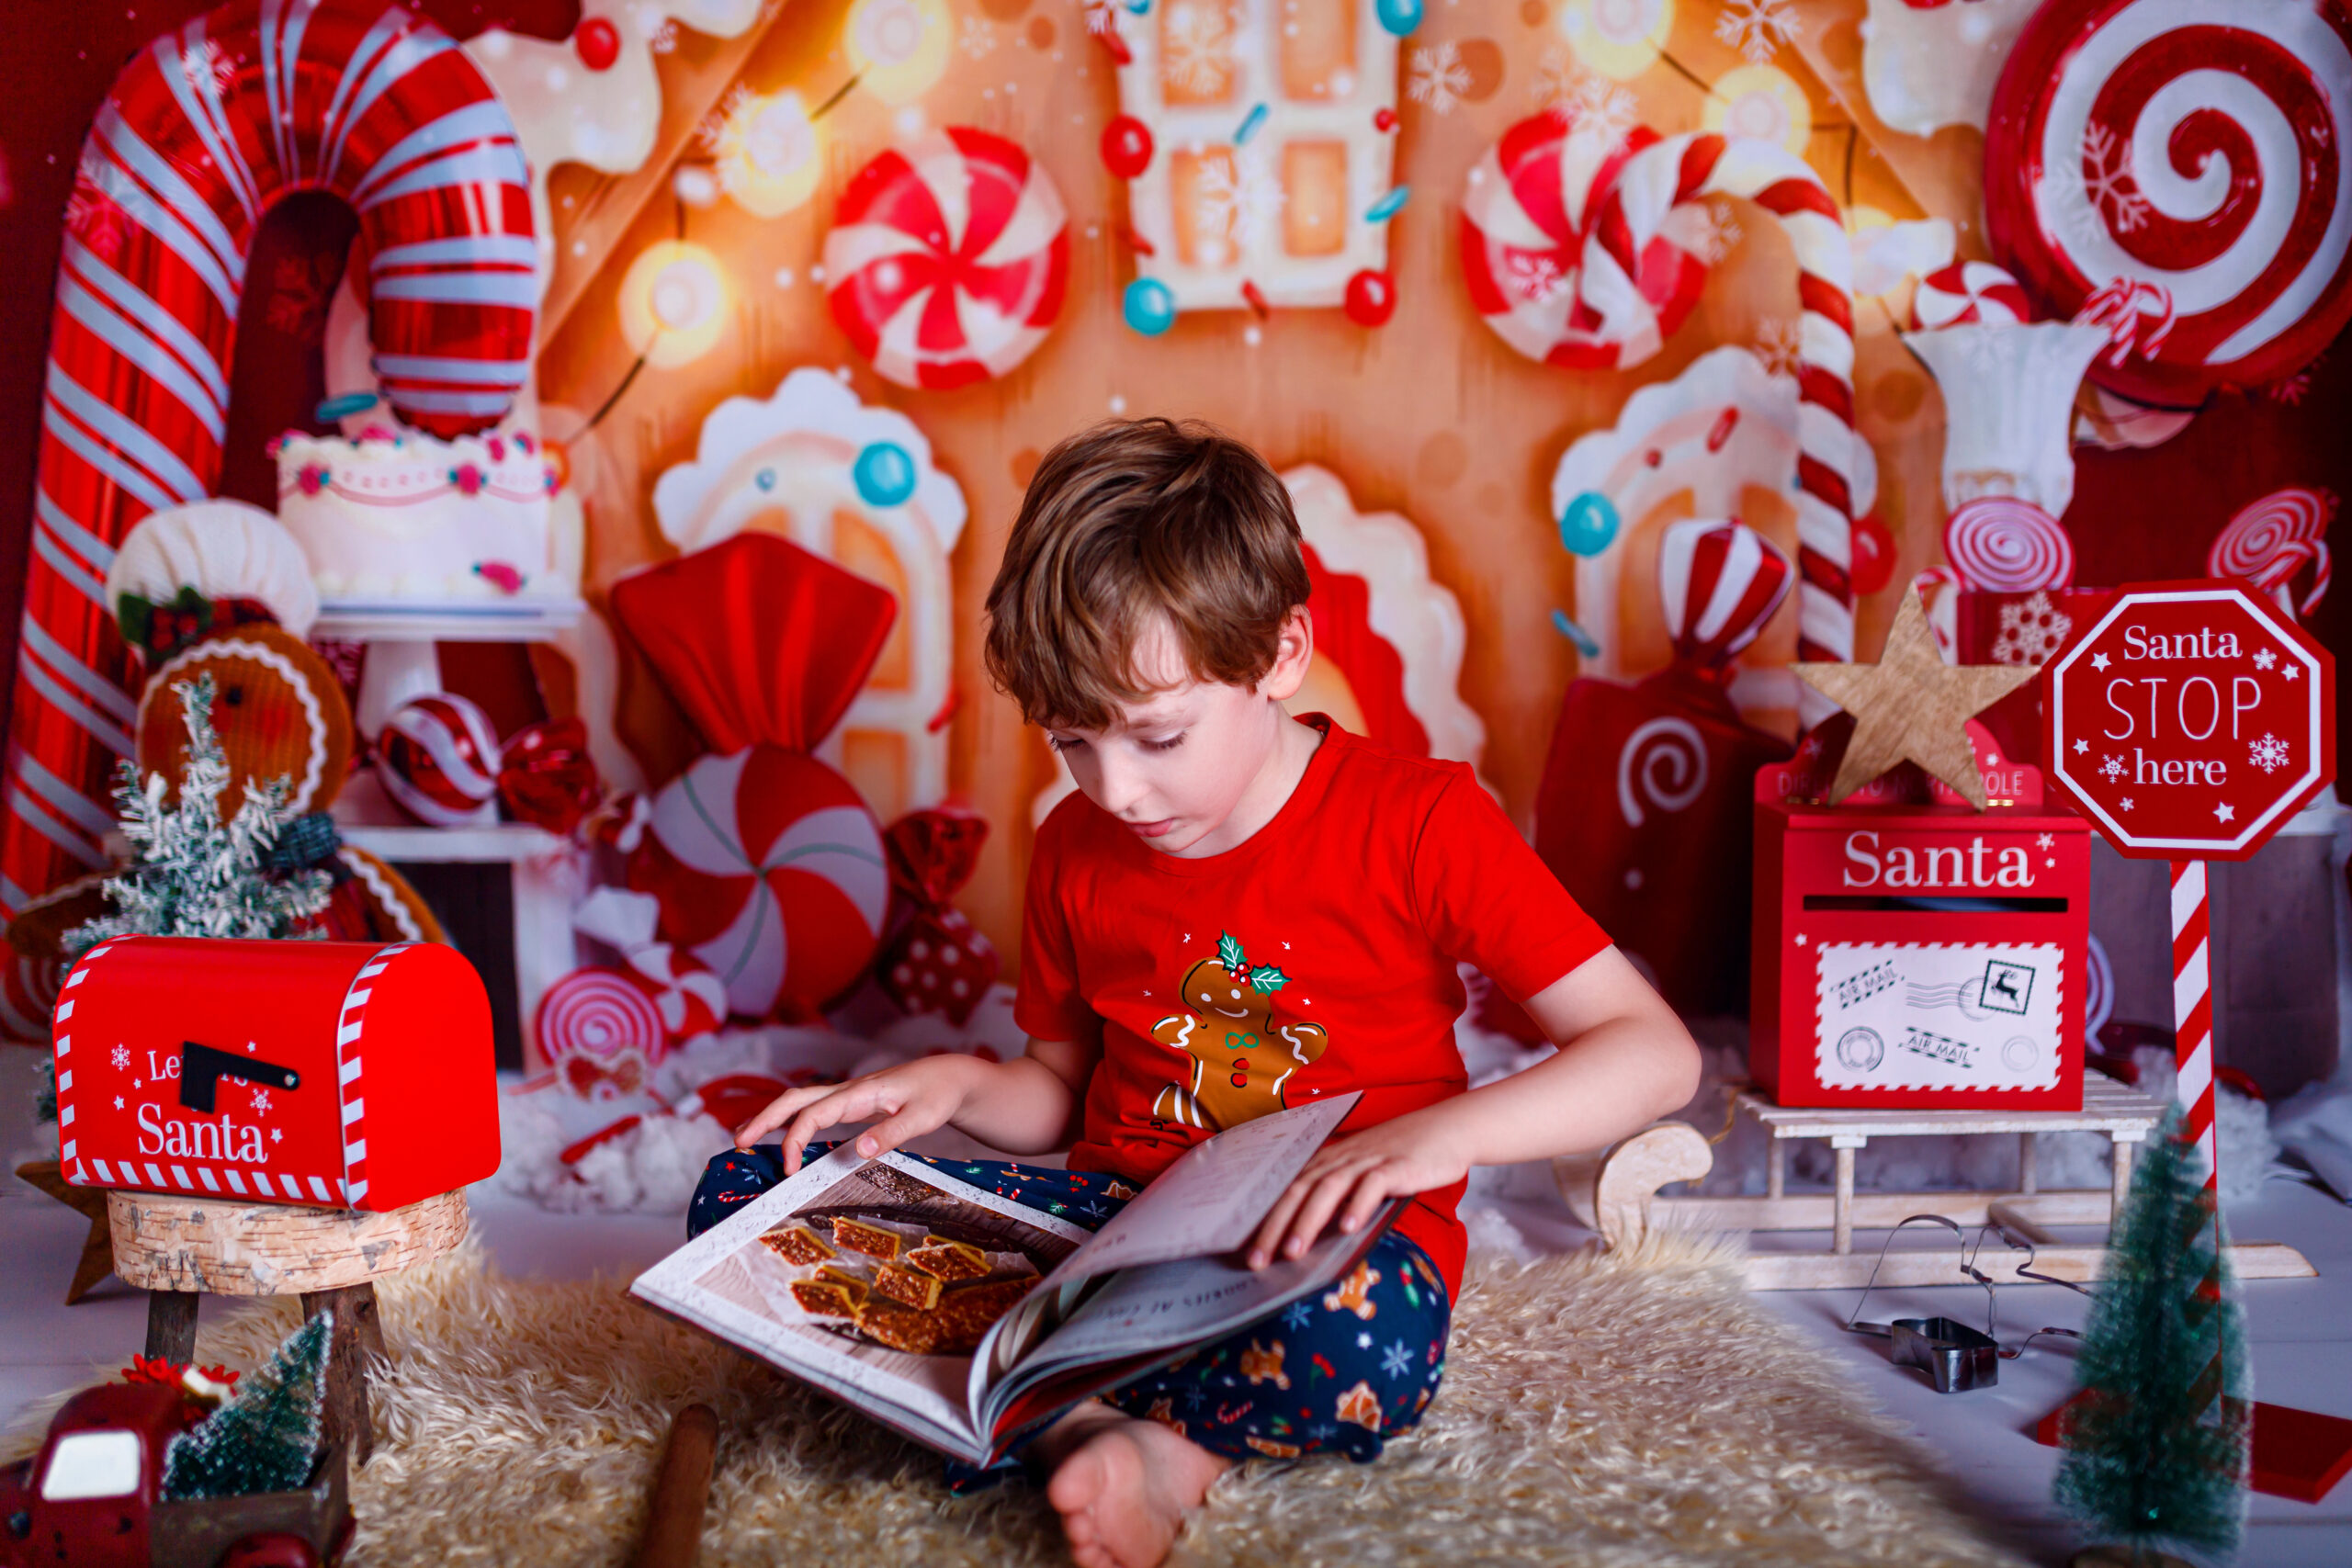 Nino leyendo libro noche navidad feliz navidad ano nuevo concepto vacaciones invierno espacio copiar texto sobre fondo rojo scaled